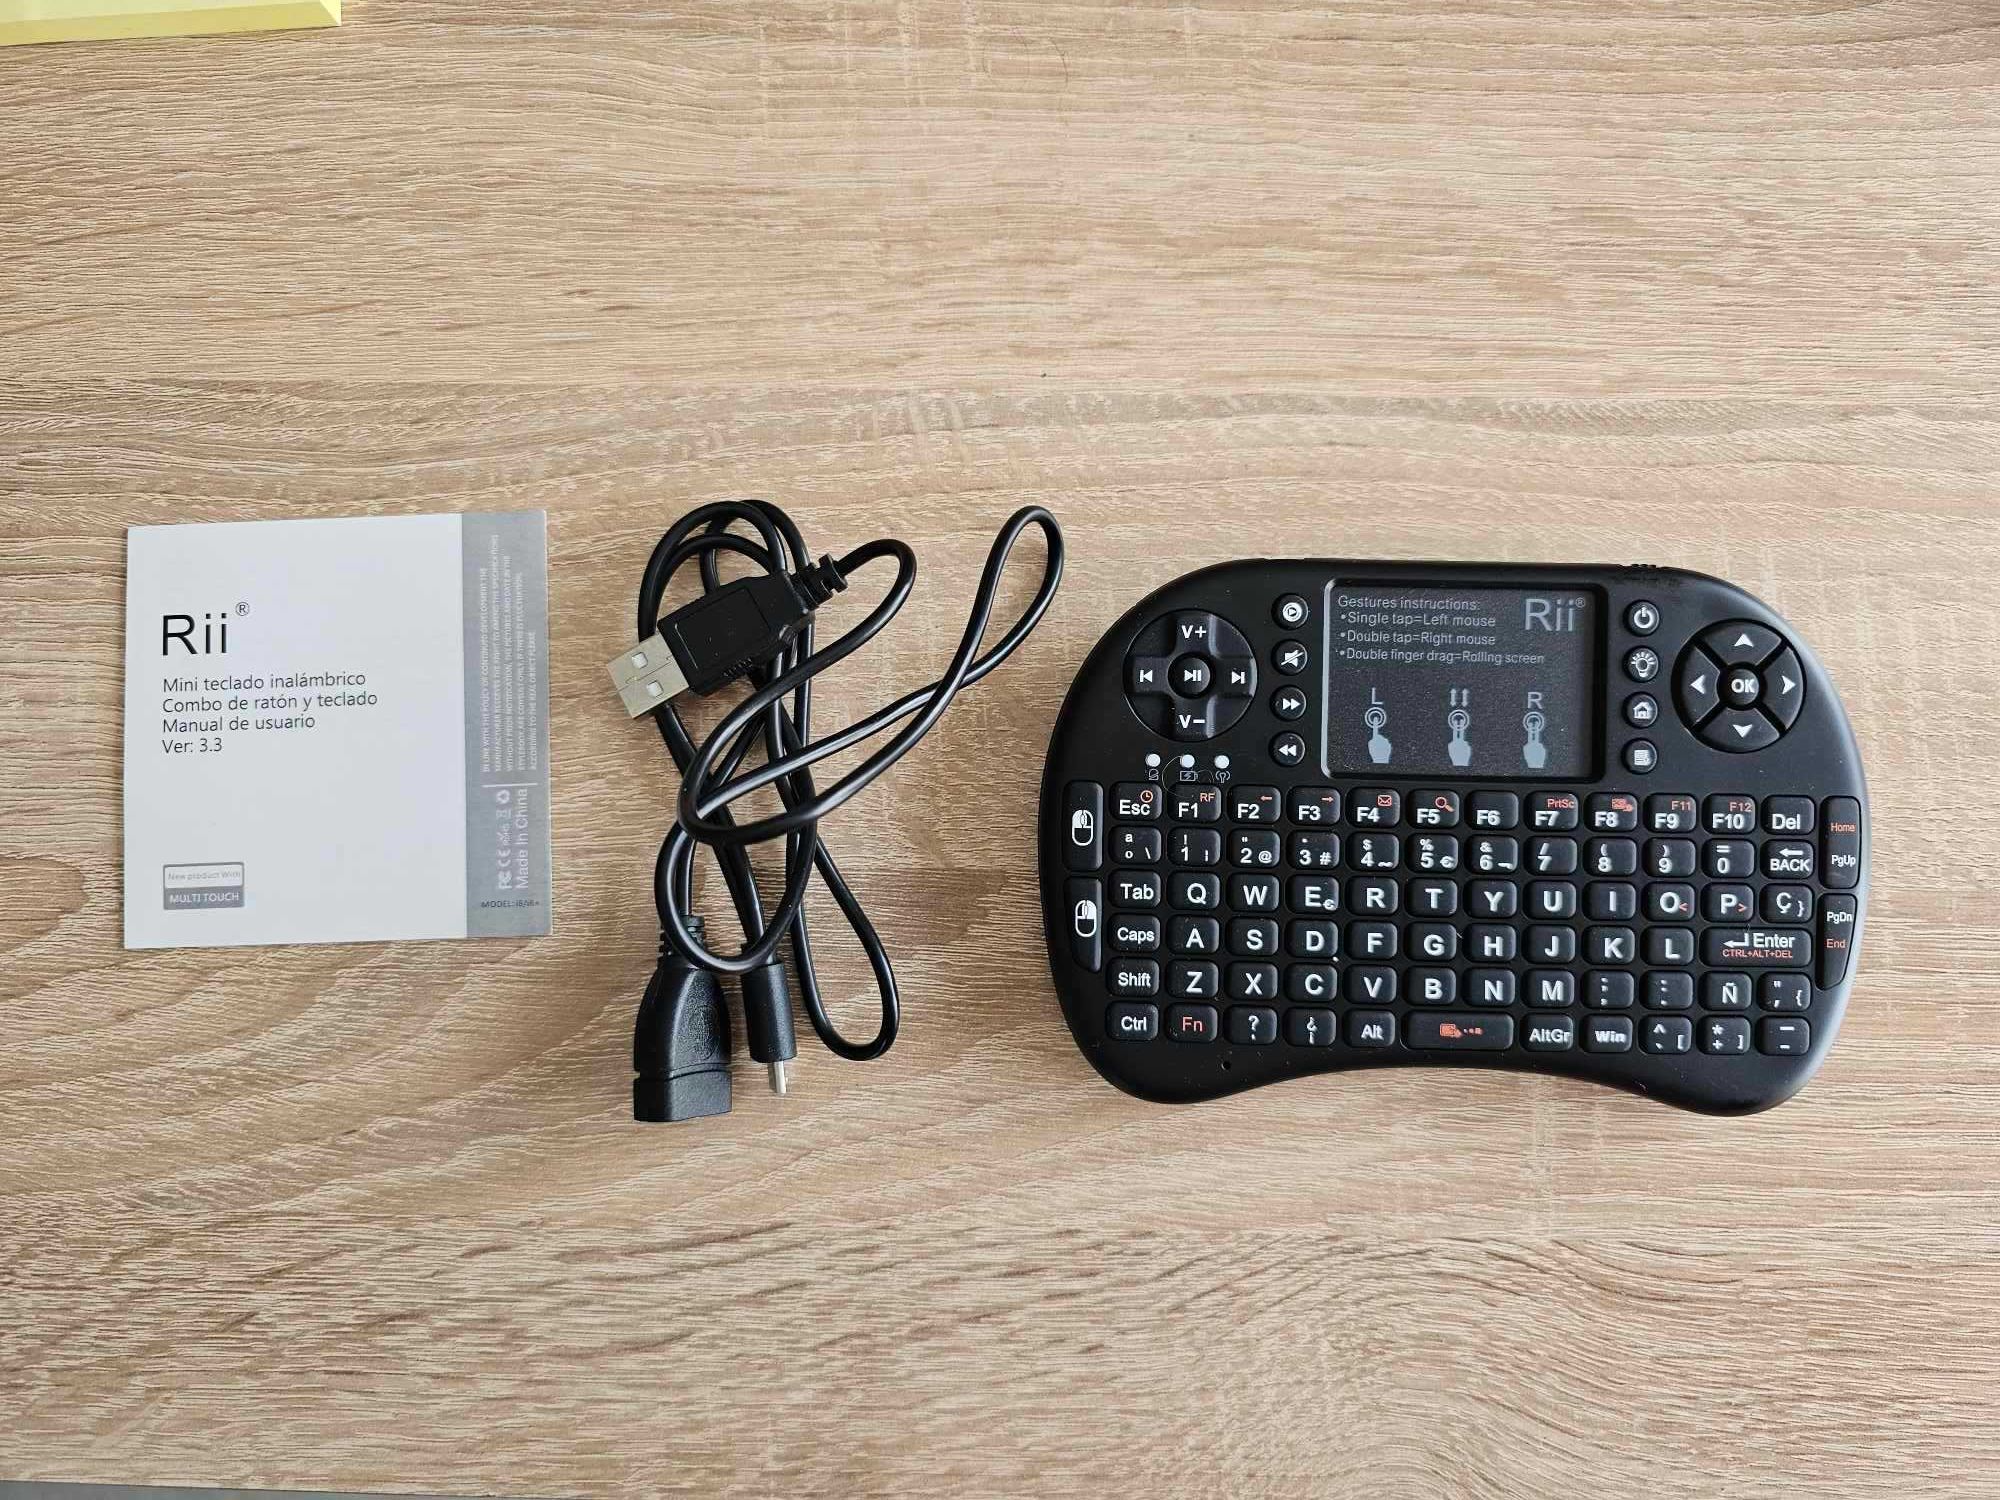 Rii Mini i8+ mini czarna klawiatura bezprzewodowa z myszą touchpada